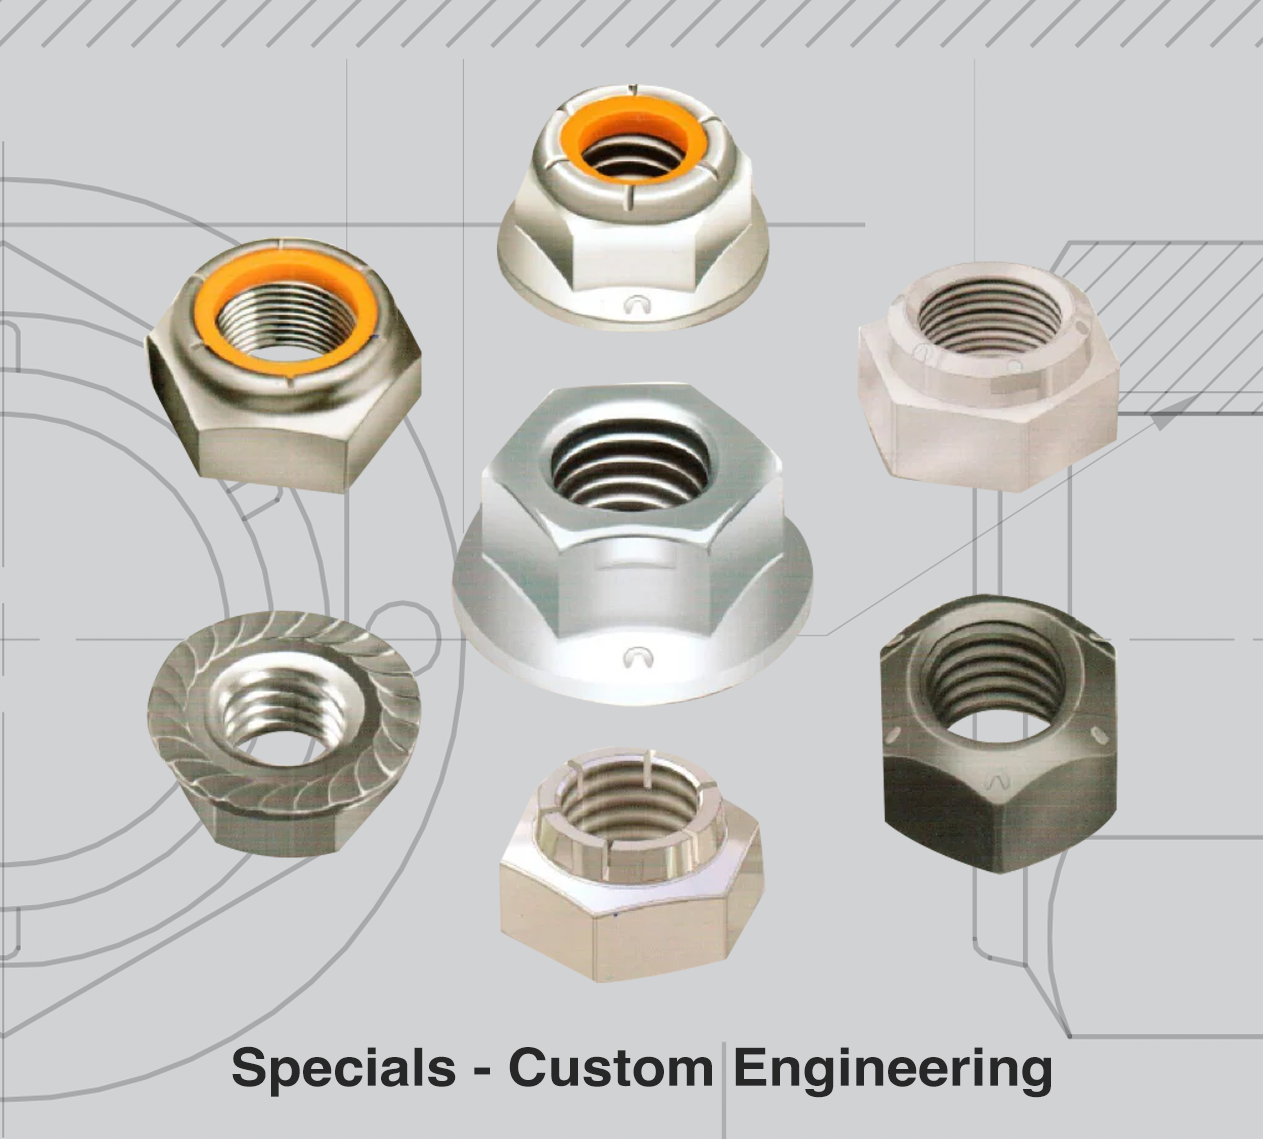 Specials - Custom Engineering